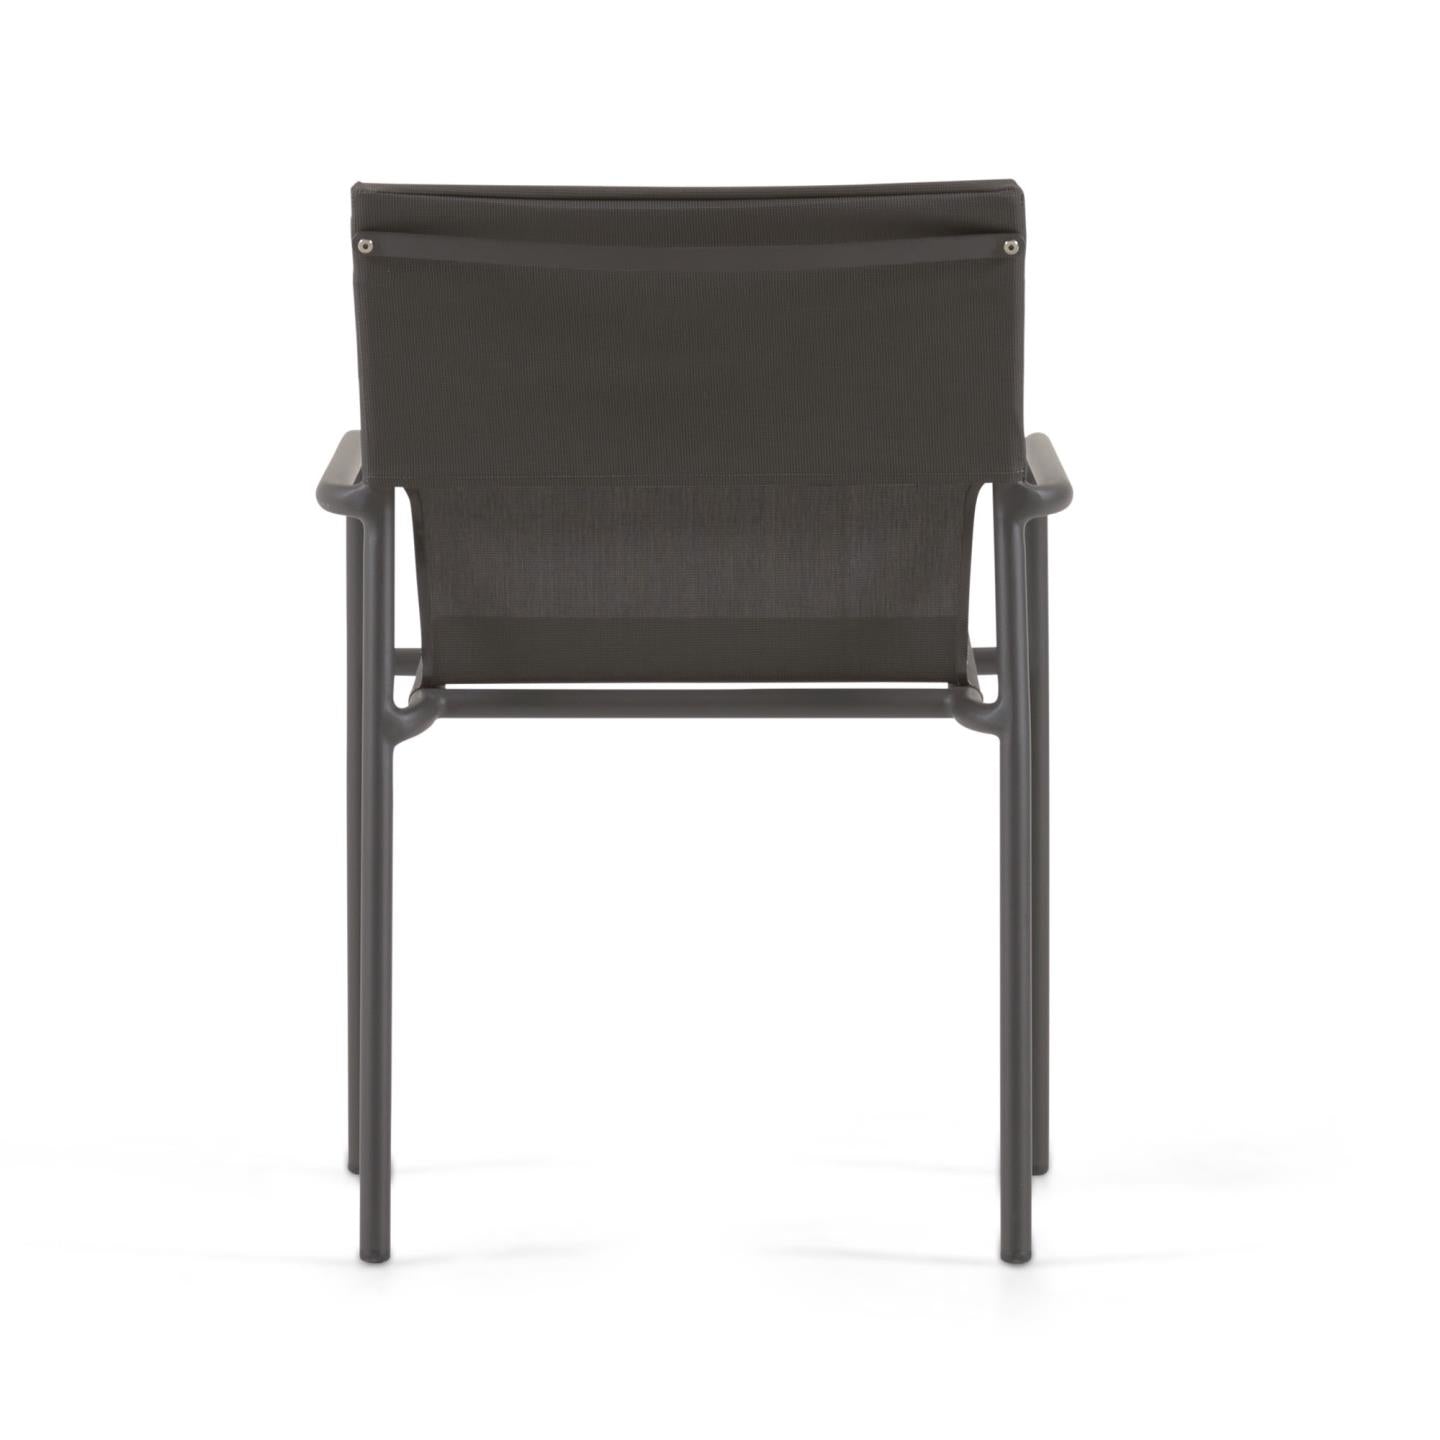 Zaltana egymásba rakható kültéri szék alumíniumból, matt fekete fényezéssel